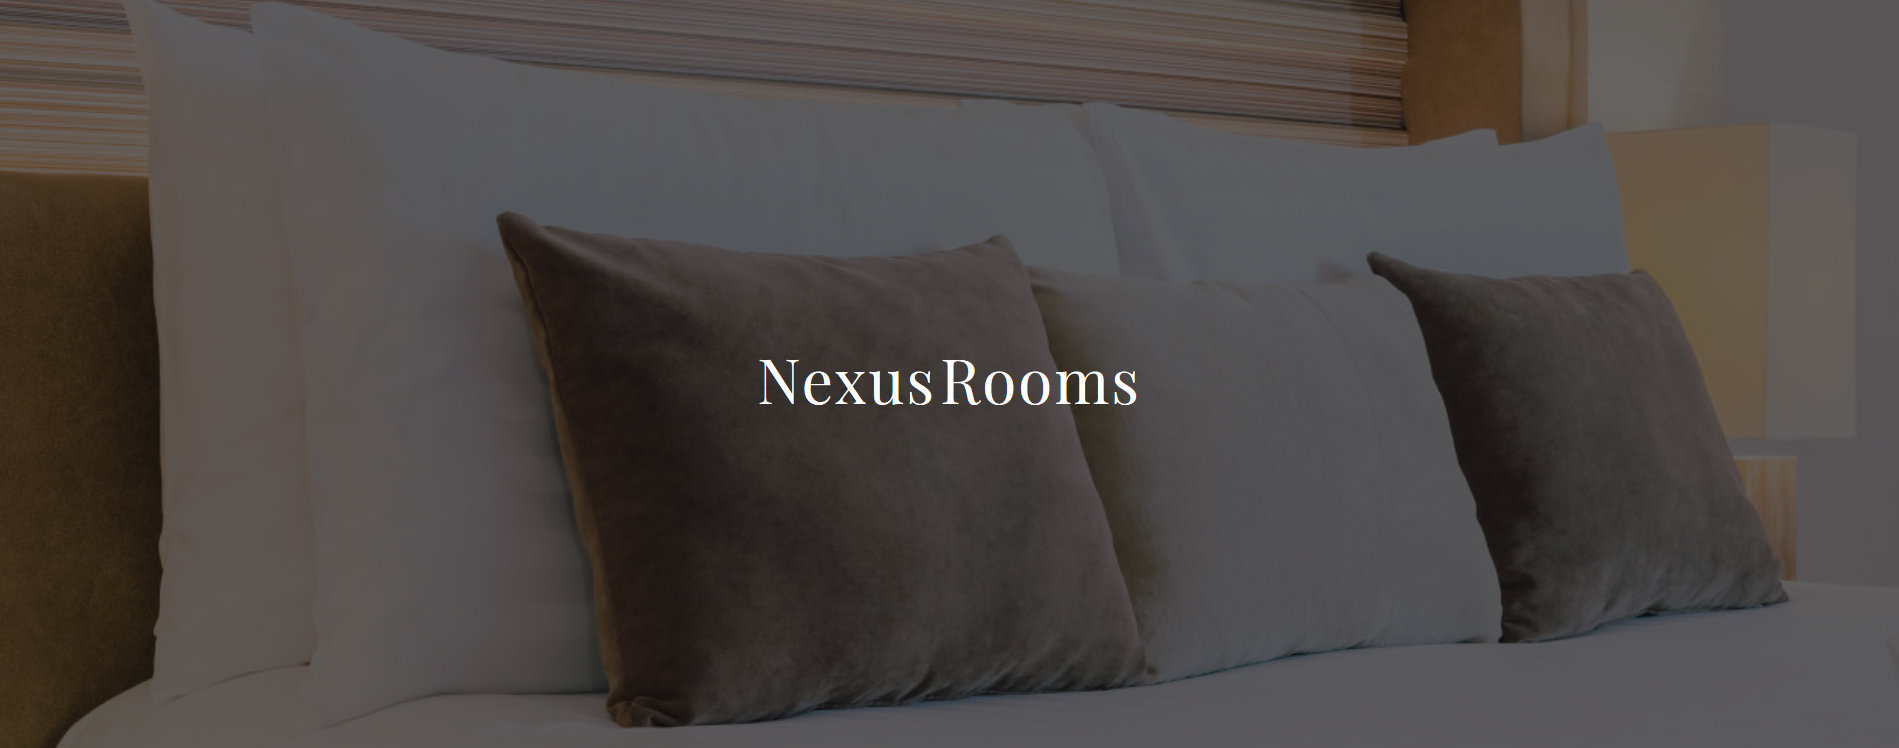 Nexus Rooms Contact